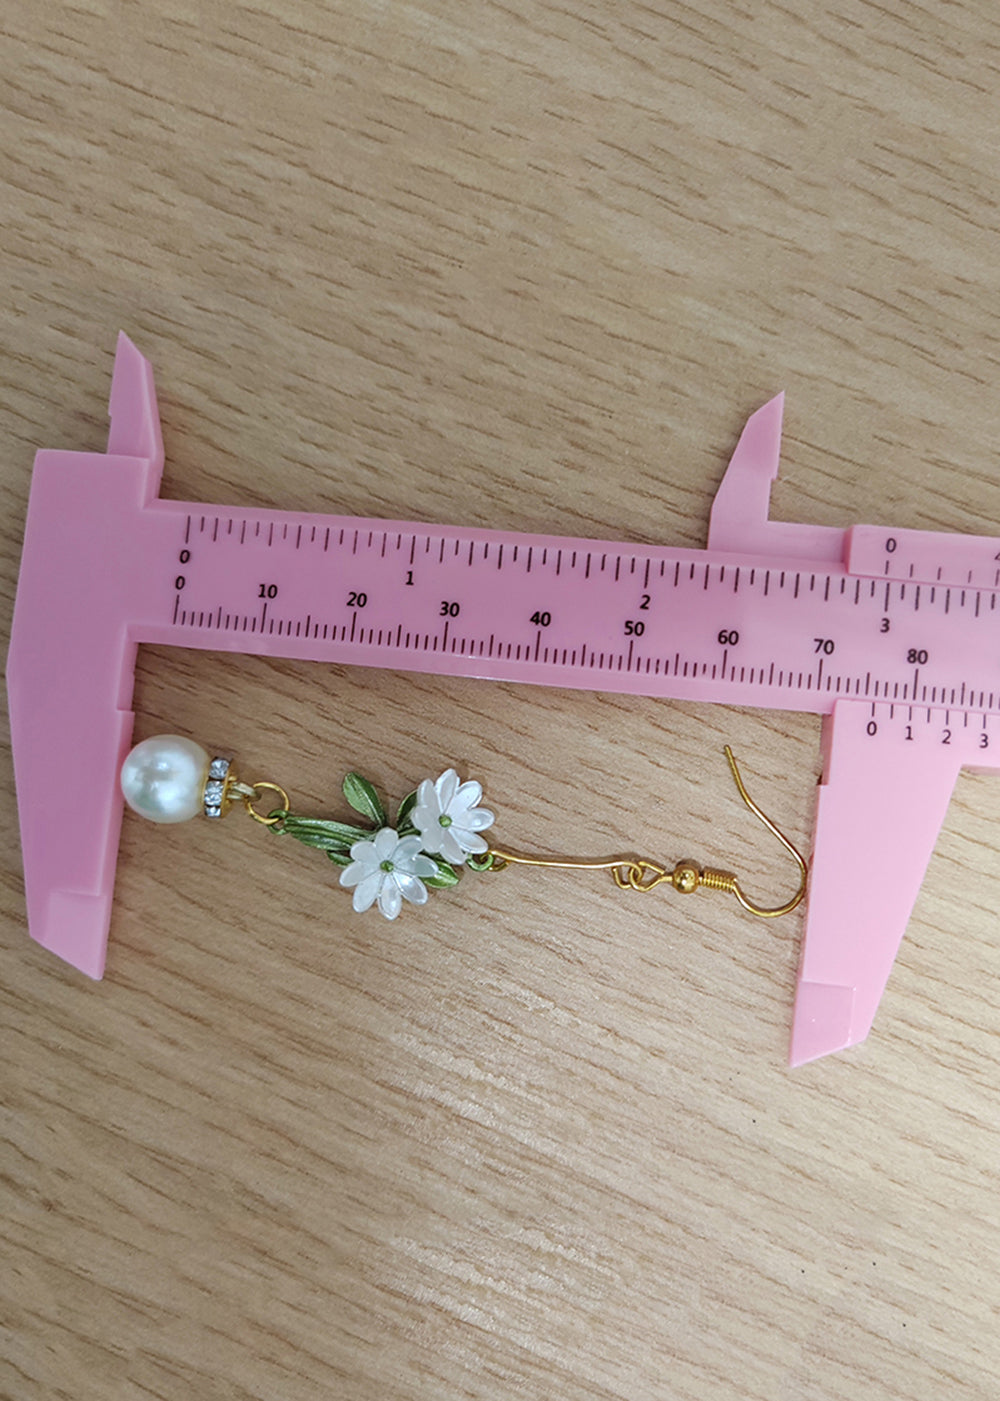 DIY White Pearl Chrysanthemum Drop Earrings